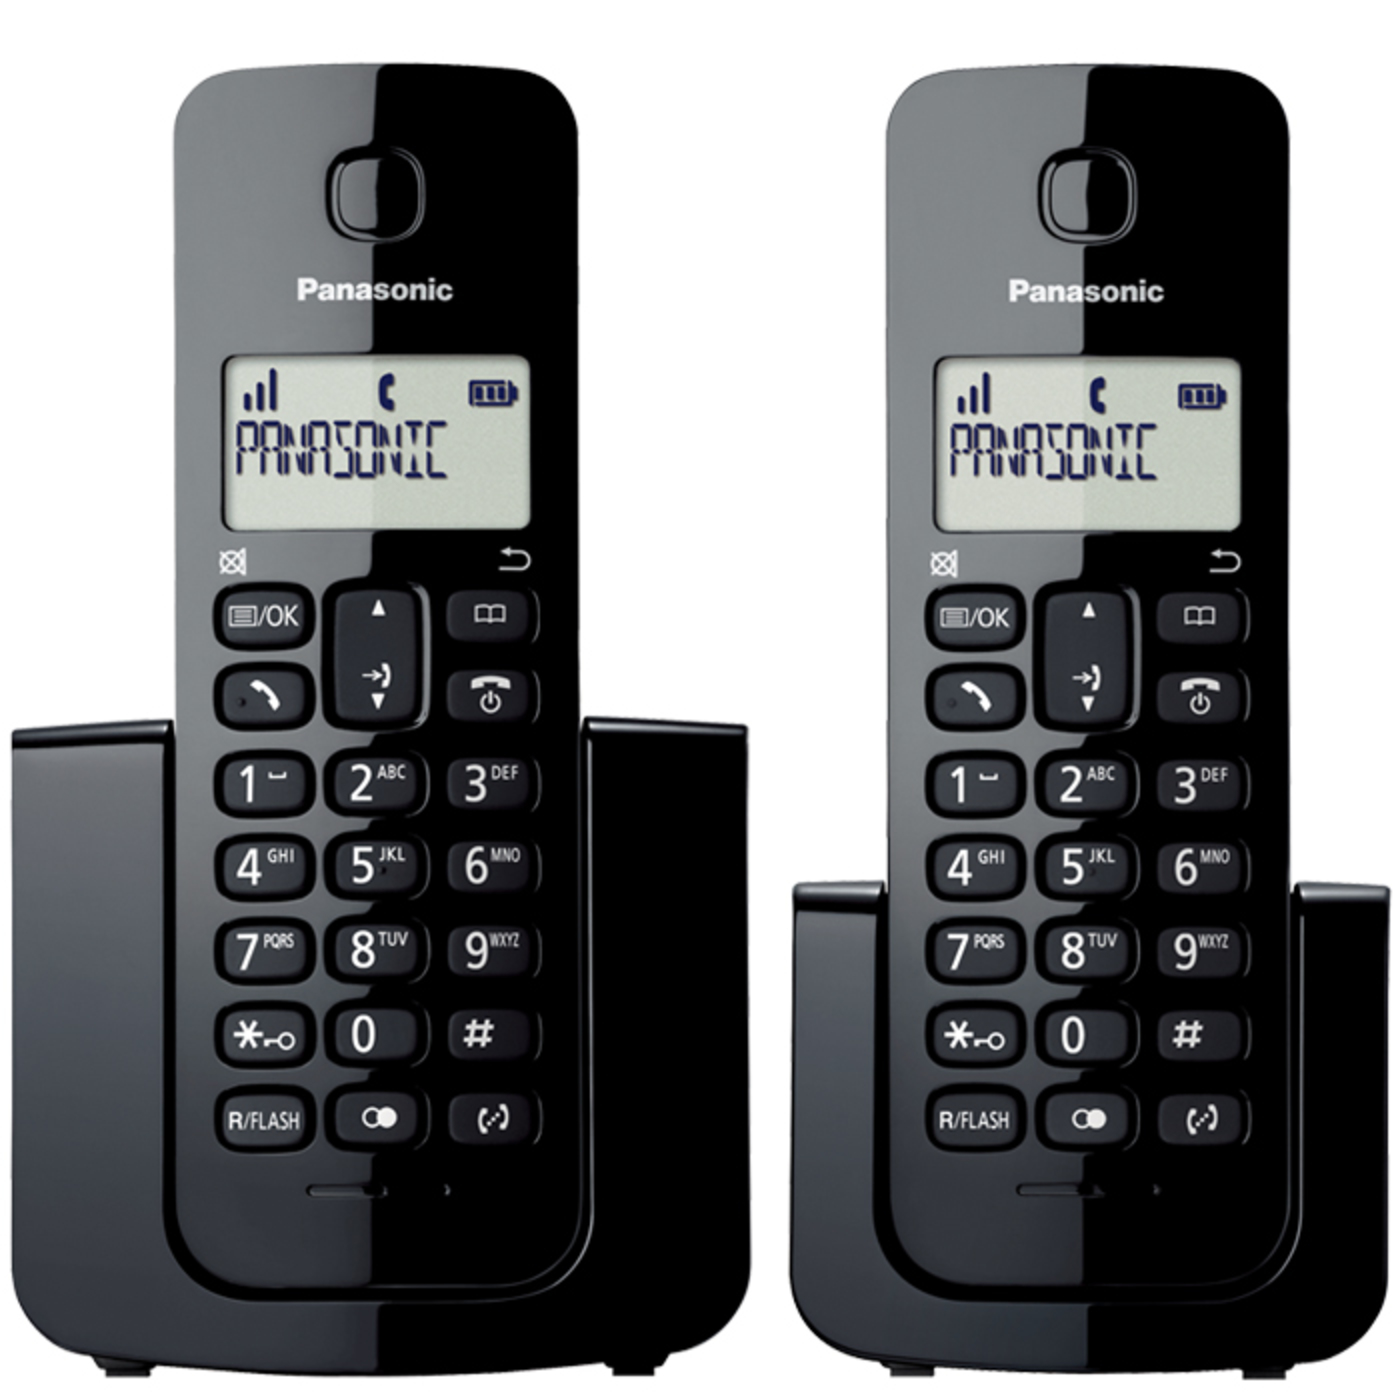 Teléfono Inalámbrico Fijo Moderno Con Lcd Para Casa Oficina Blanco botones  negro